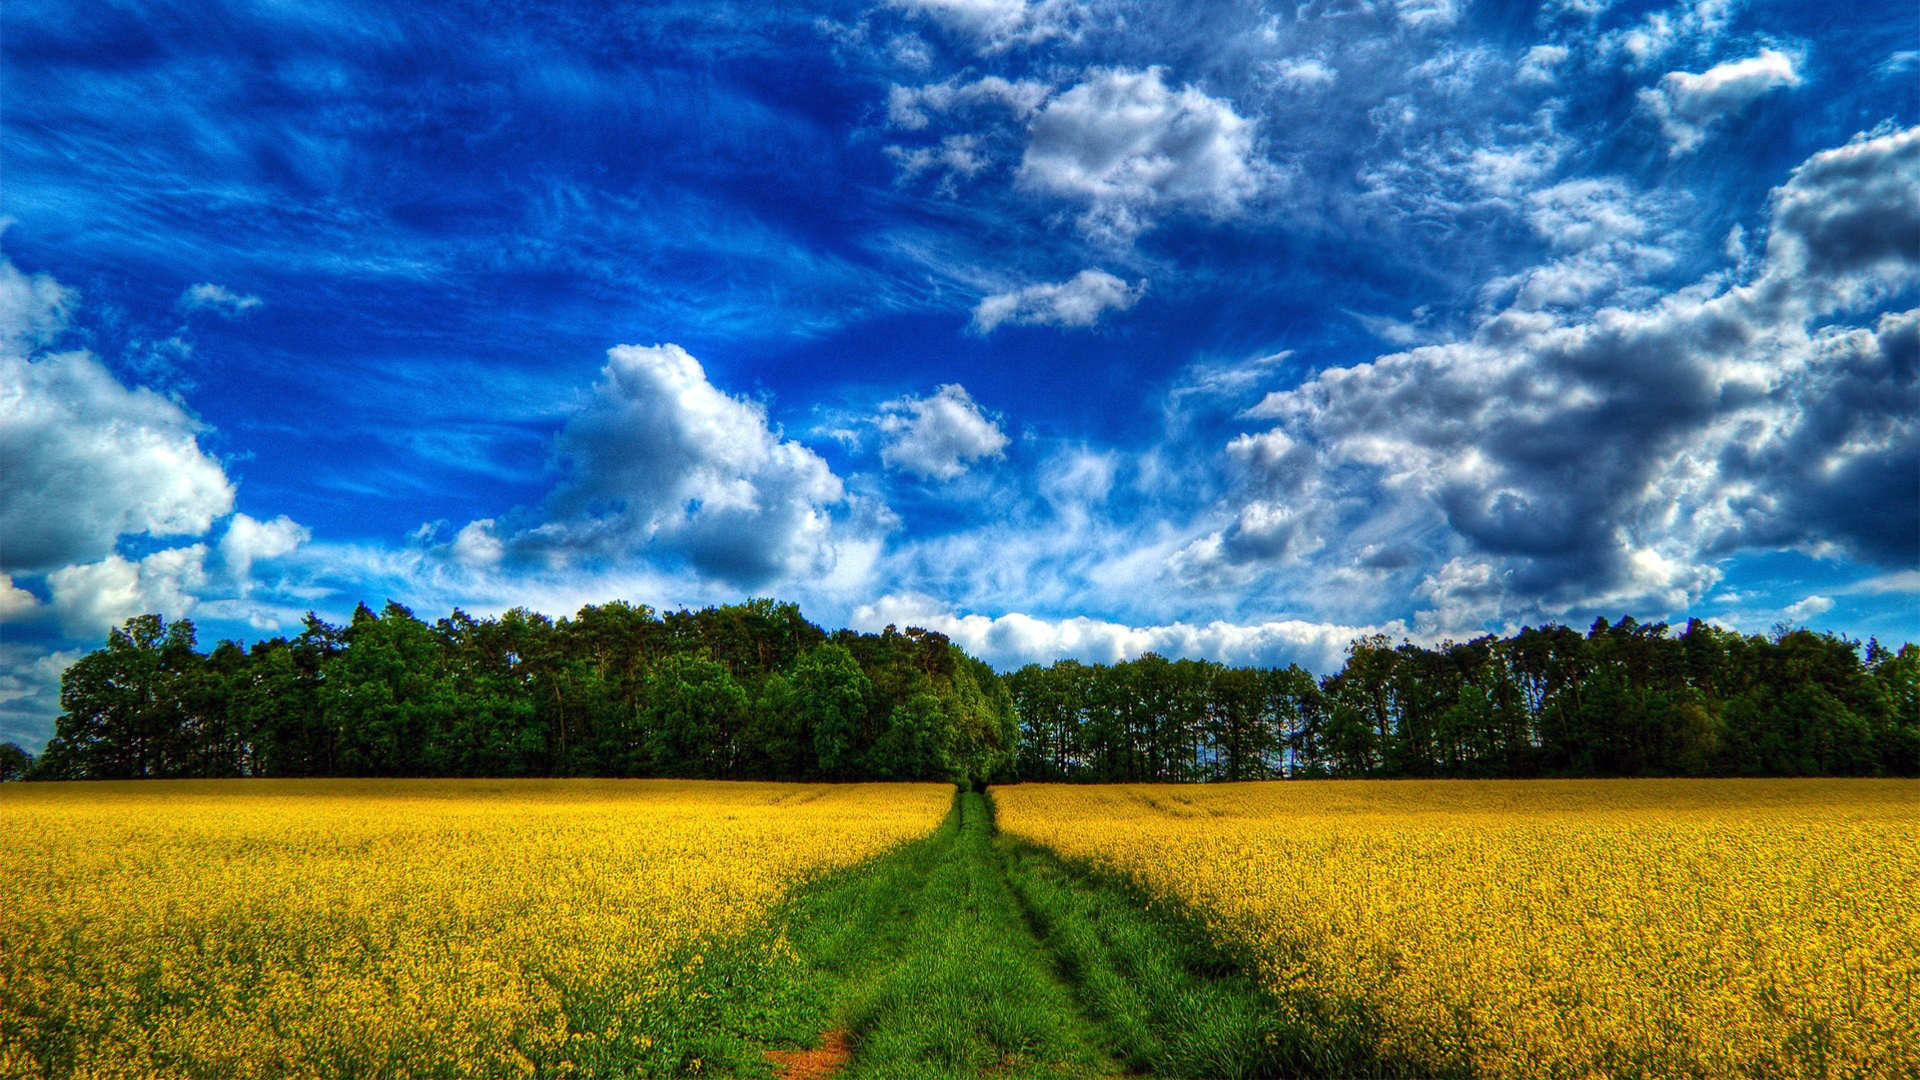 Поле желтых цветов, с тропинкой по середине, на фоне деревьев, неба и облаков